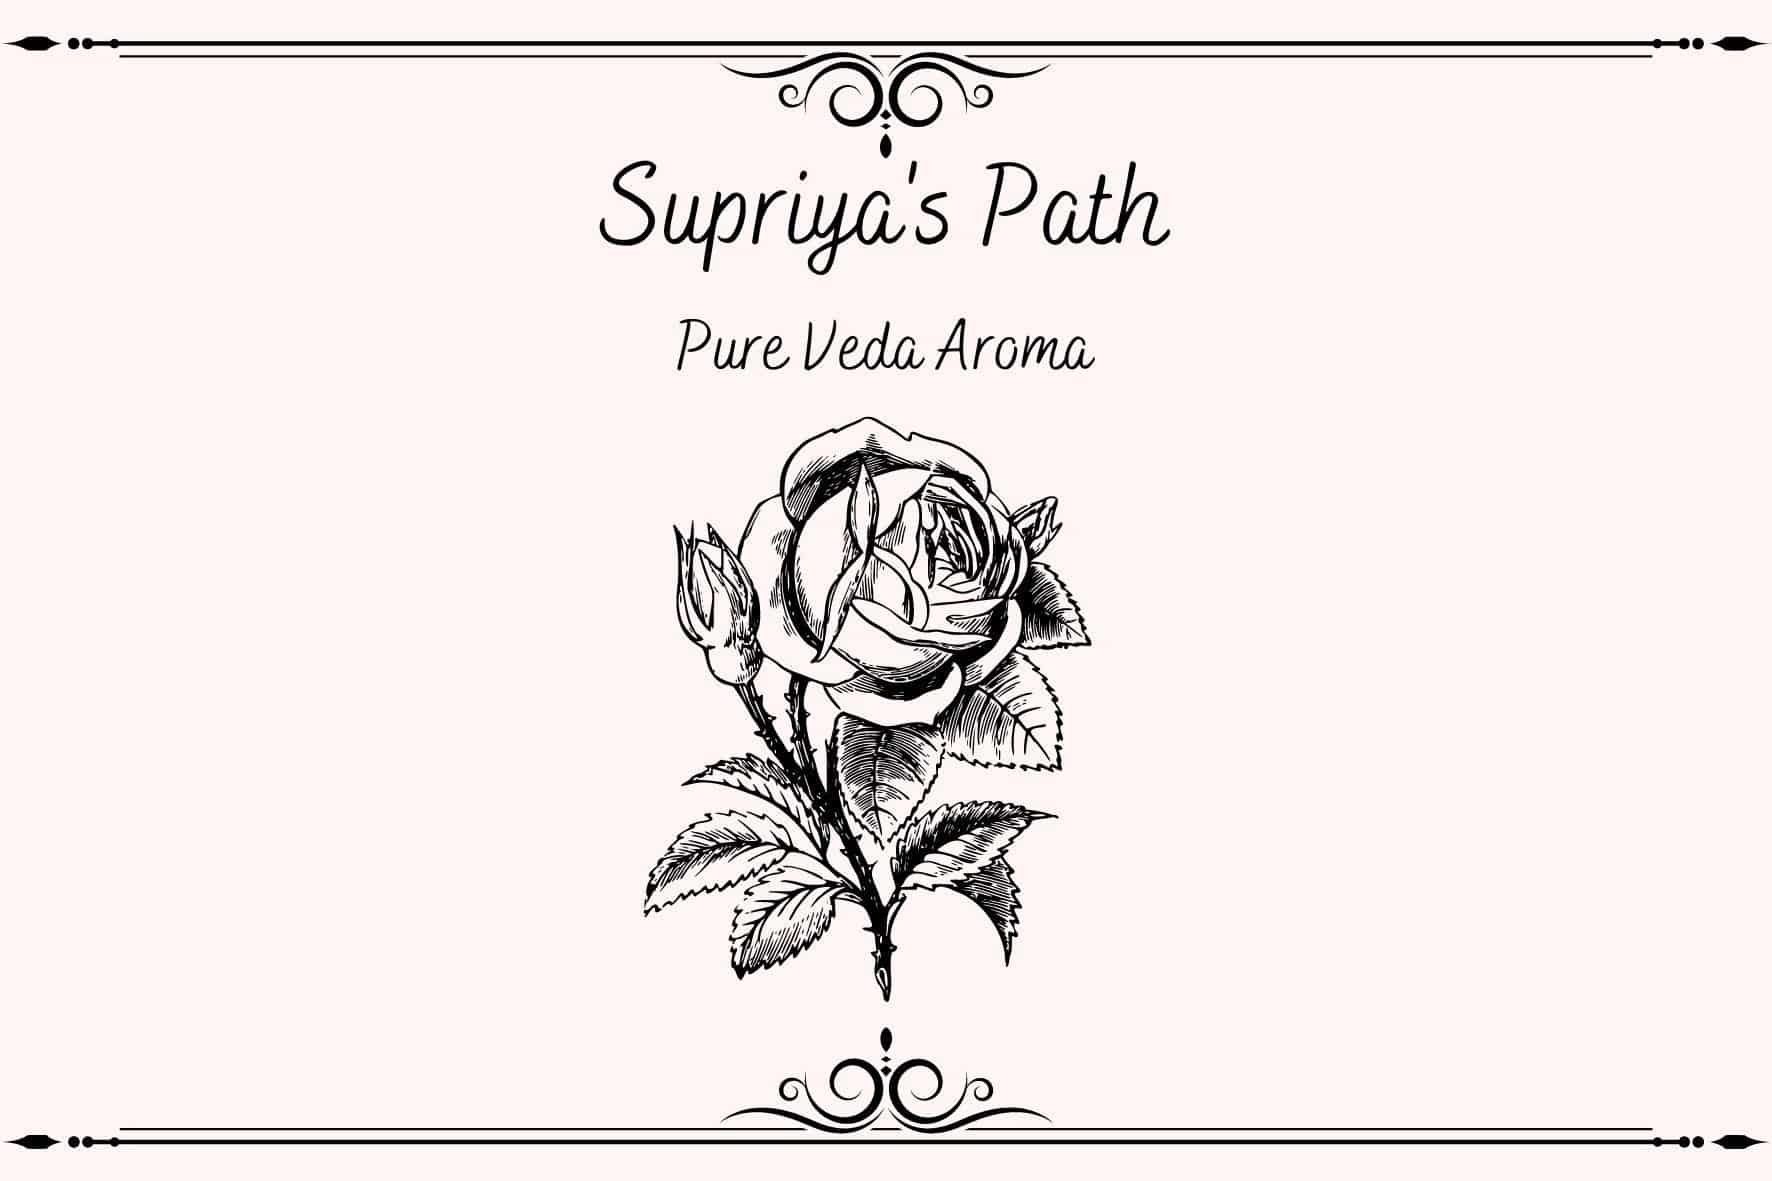 Supriya's Path Pure Veda Aroma